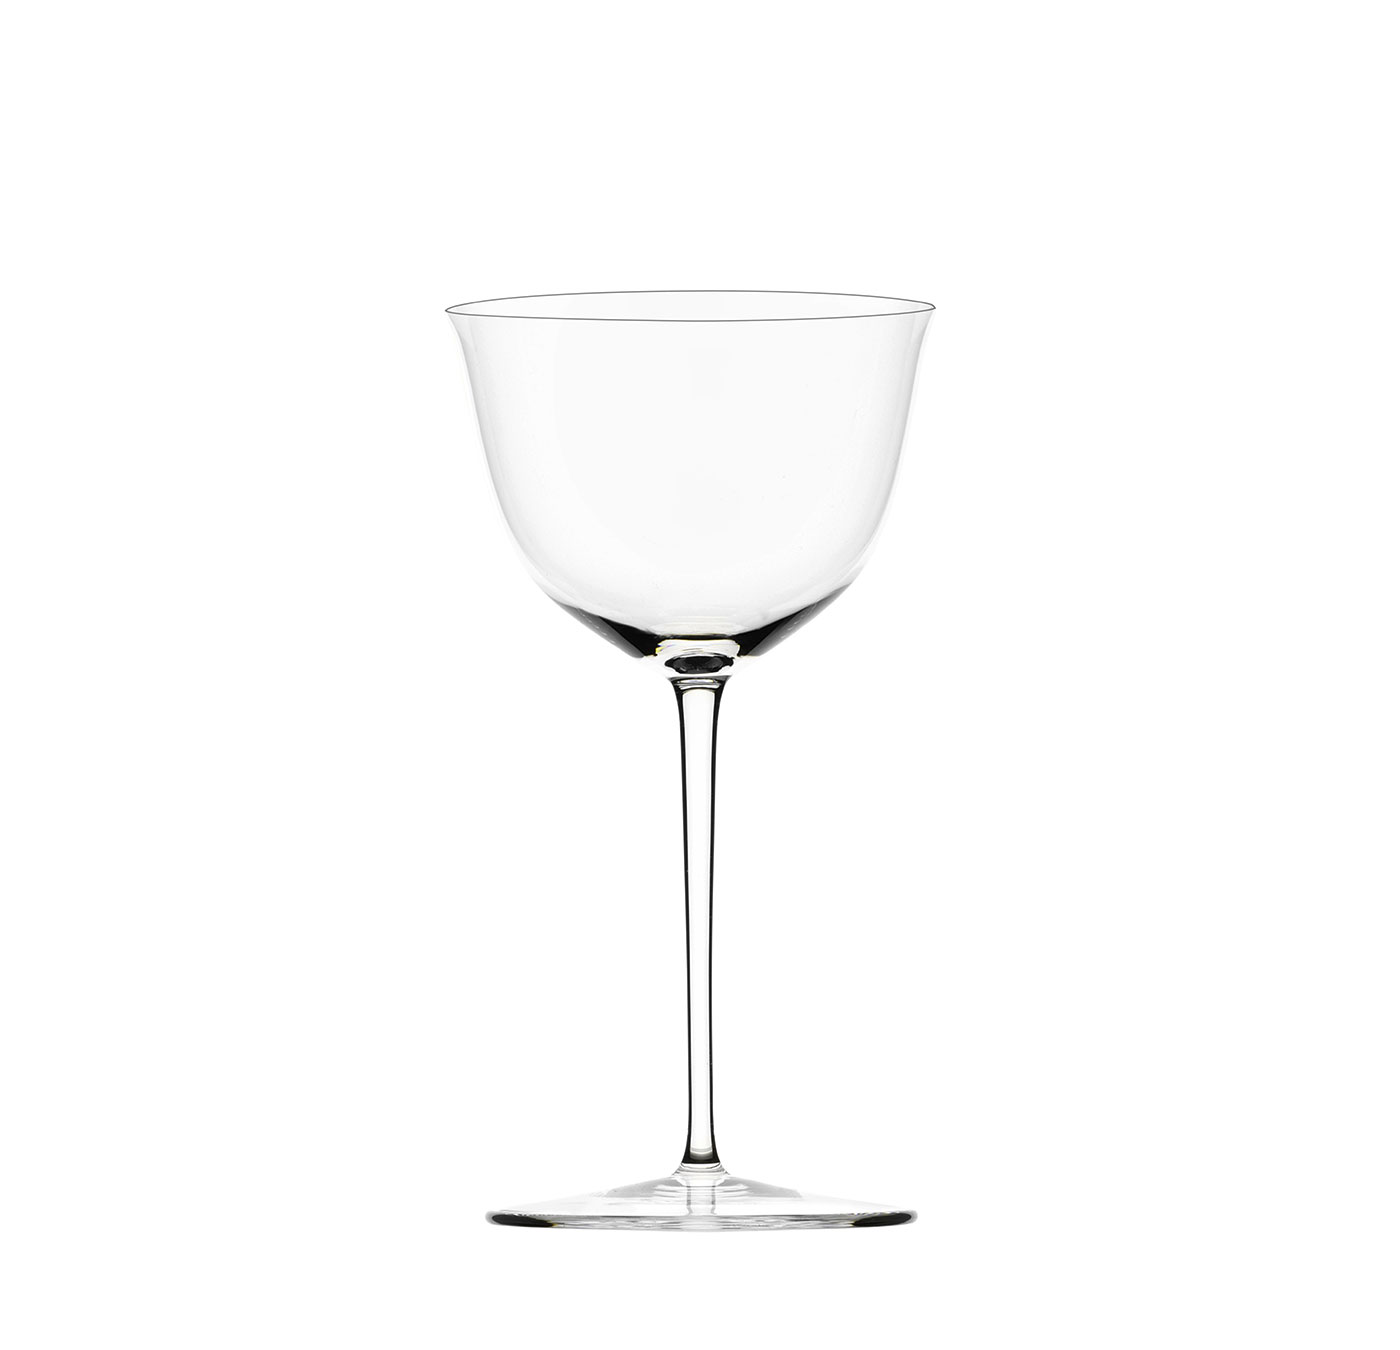 TS238GL Wine glass I.